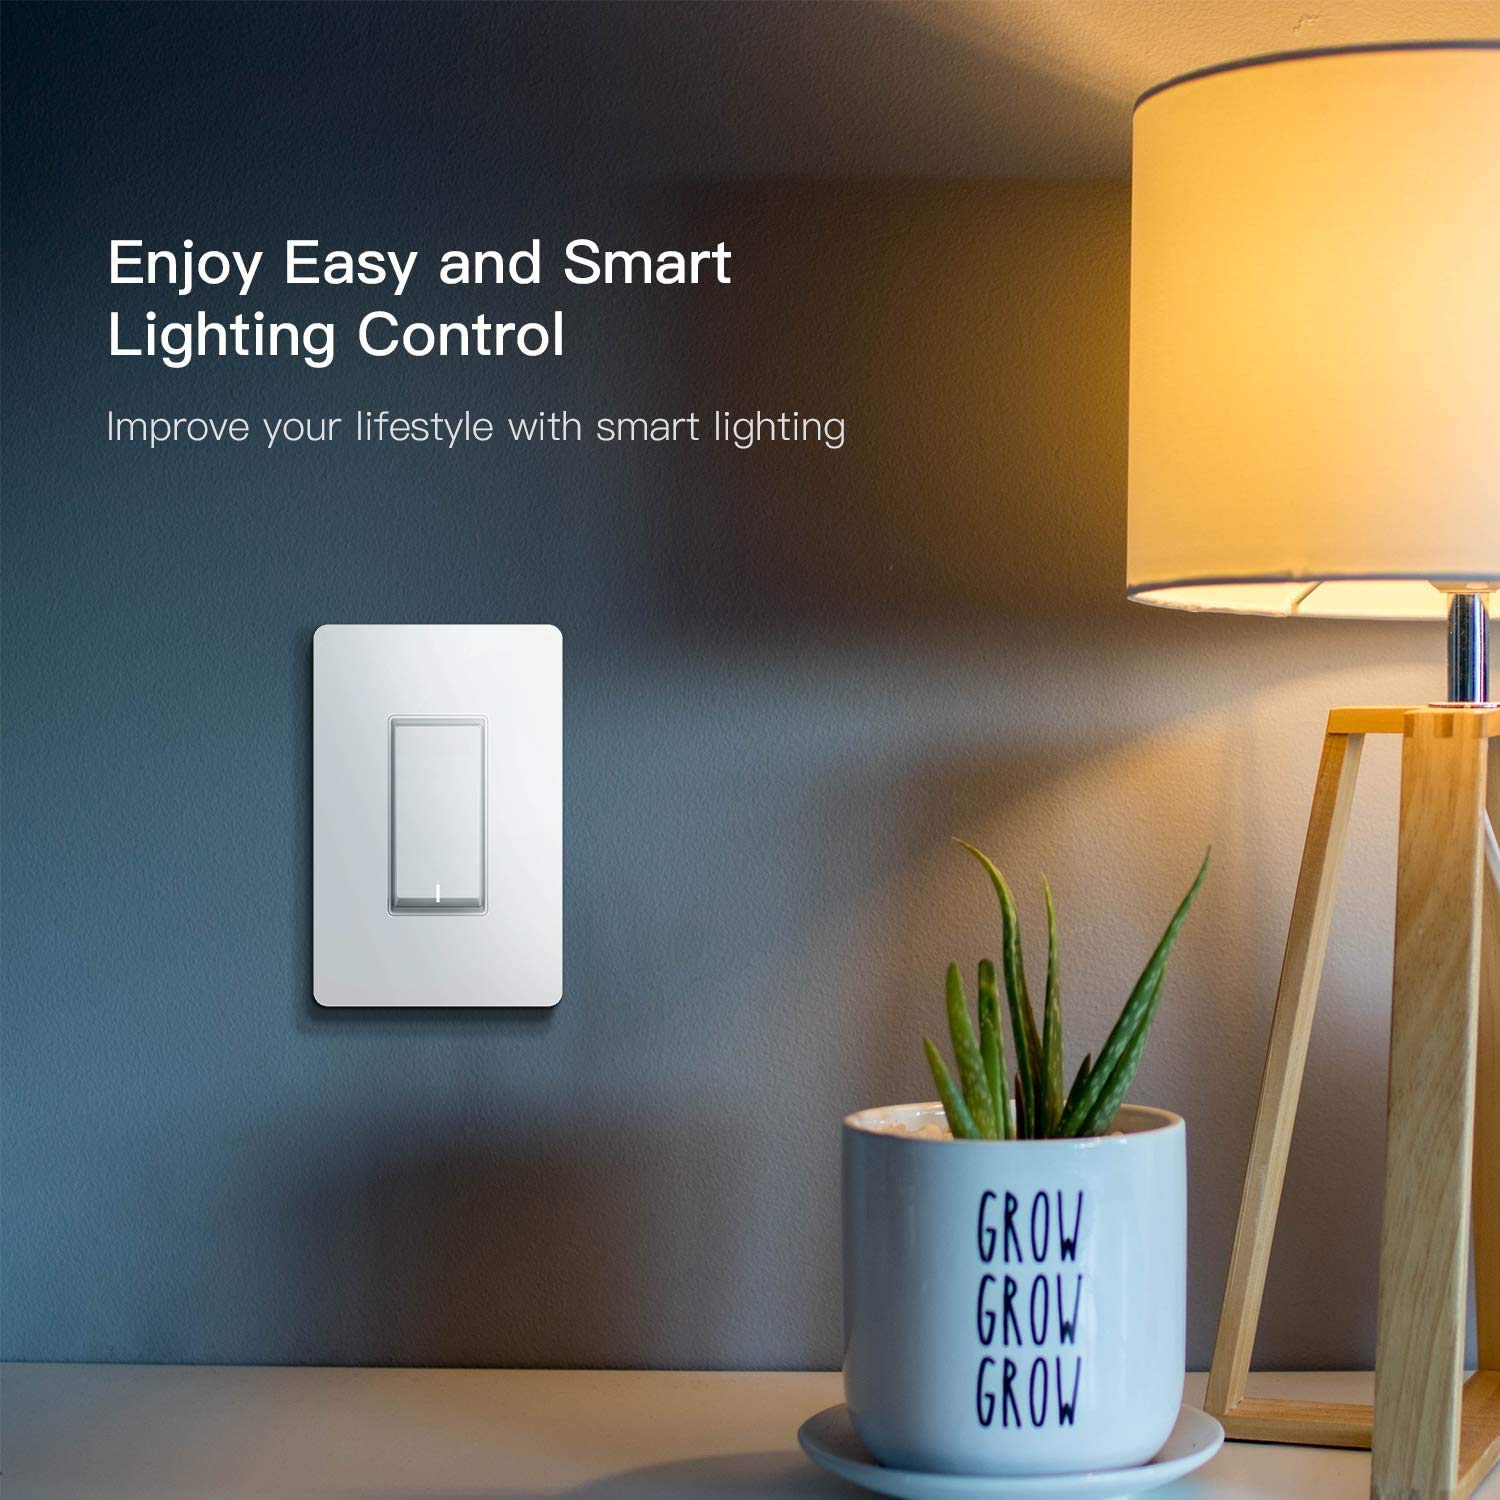 Treatlife 3 Way Smart Light Switch, 2.4GHz Wi-Fi Light Switch